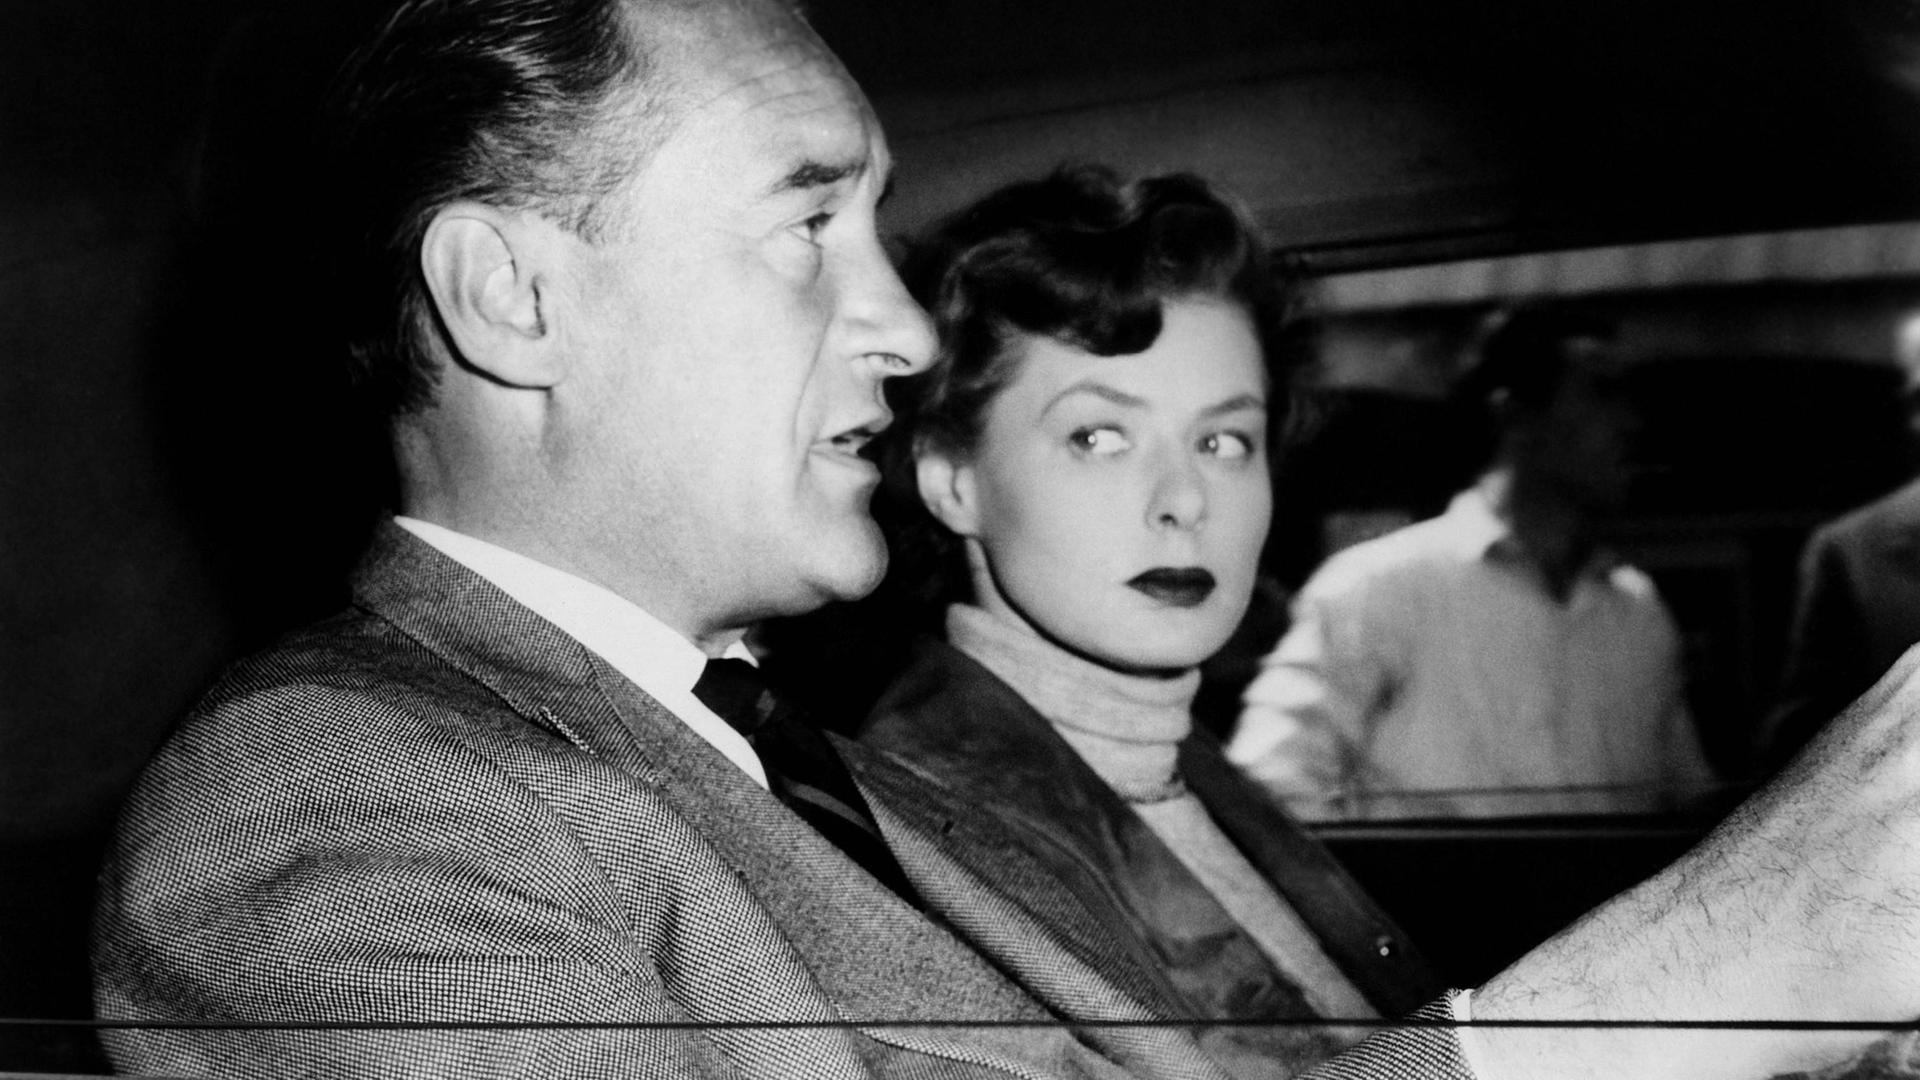 Die Schauspieler George Sanders und Ingrid Bergman sitzen im Auto im Film "Journey to Italy" 1954.